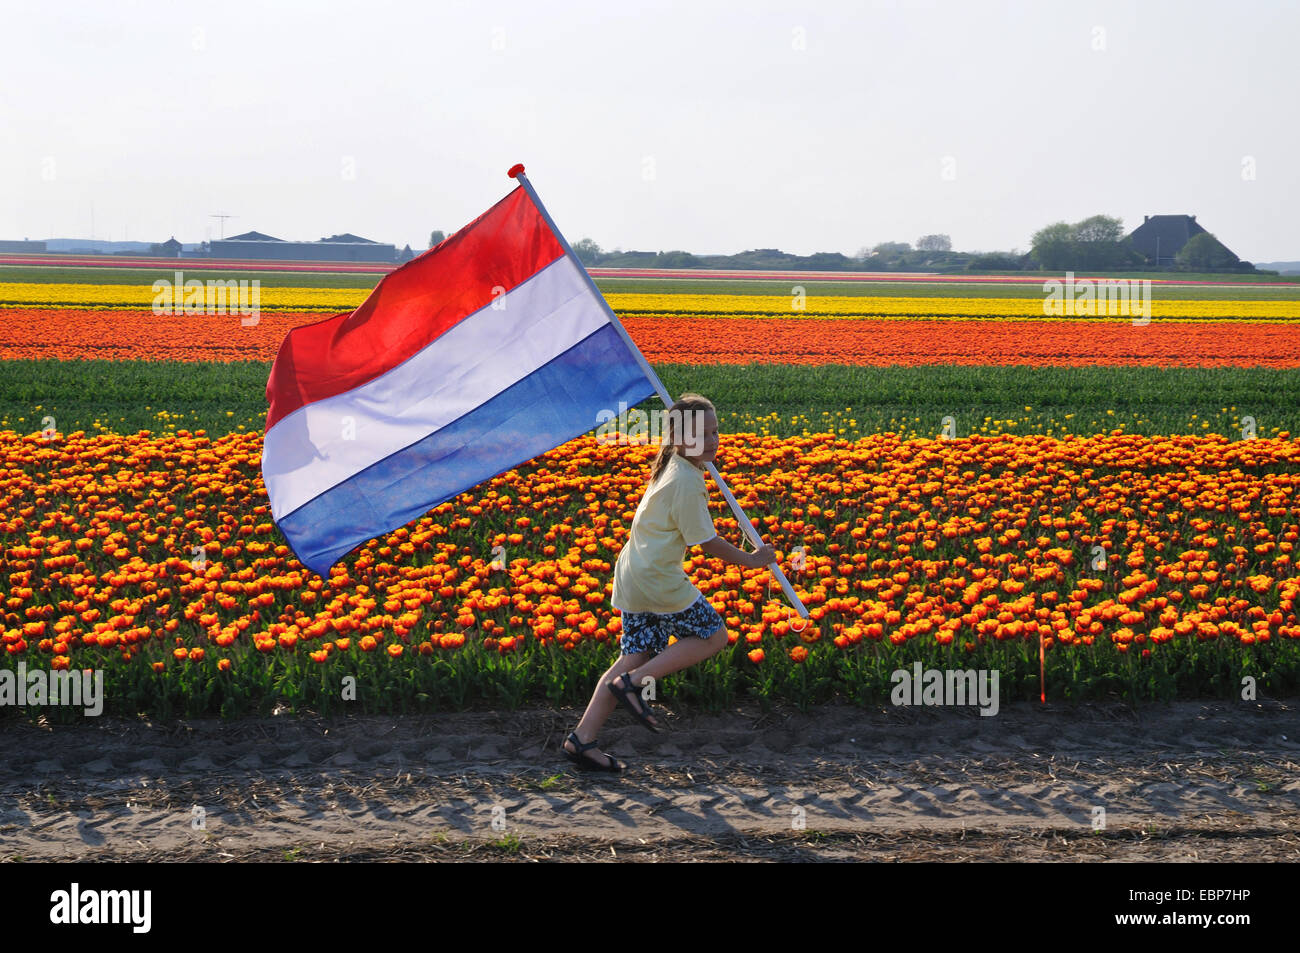 gemeinsamer Garten-Tulpe (Tulipa Gesneriana), junge mit niederländischer Flagge läuft vor blühenden Tulpenfeld, Niederlande Stockfoto